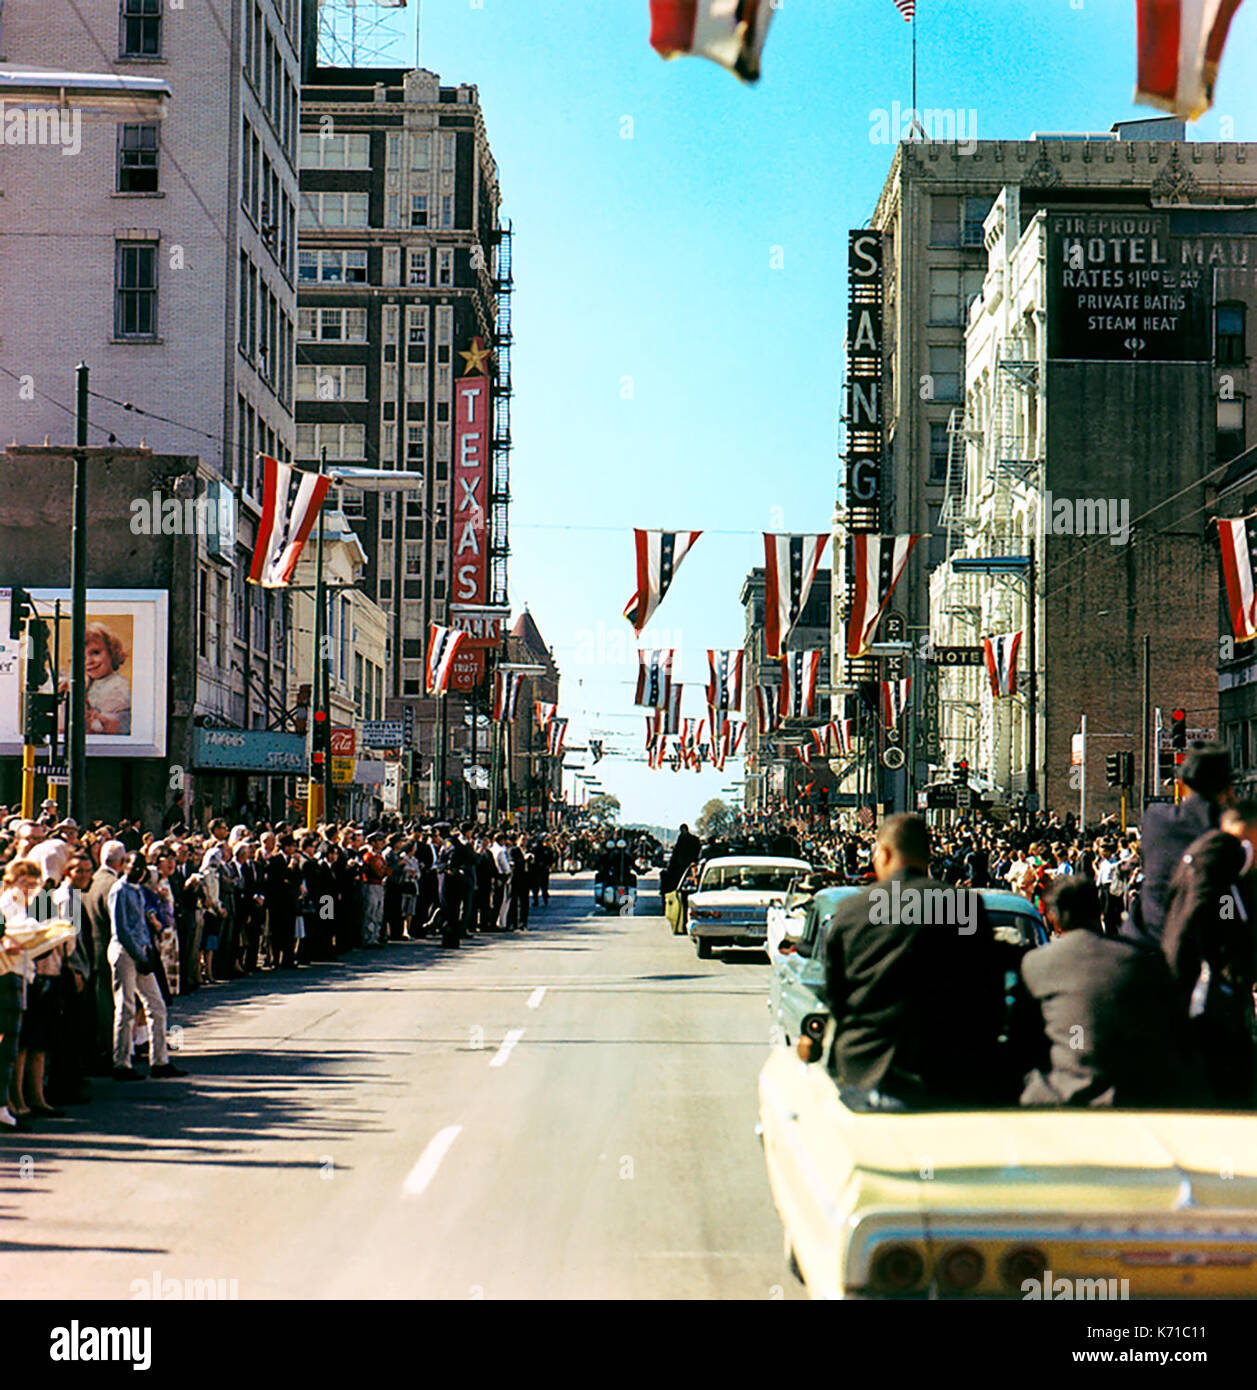 Il presidente John F. Kennedy per il giro della Papamobile sulla strada principale al Griffin Street a Dallas, in Texas, il 22 novembre 1963, poco prima che il presidente Kennedy è stato assassinato. Foto di Cecil Stoughton. Foto Stock